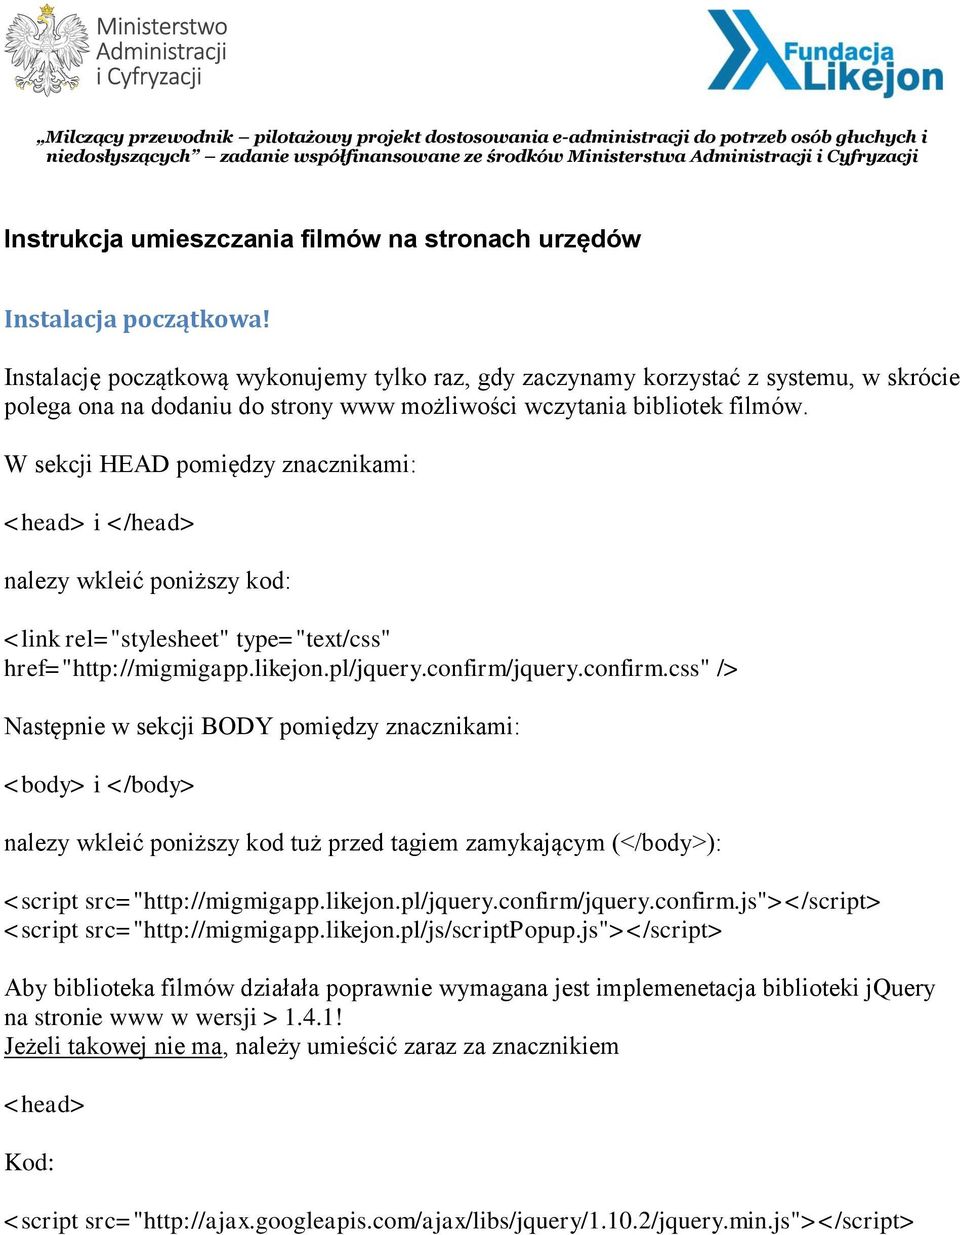 W sekcji HEAD pomiędzy znacznikami: <head> i </head> nalezy wkleić poniższy kod: <link rel="stylesheet" type="text/css" href="http://migmigapp.likejon.pl/jquery.confirm/